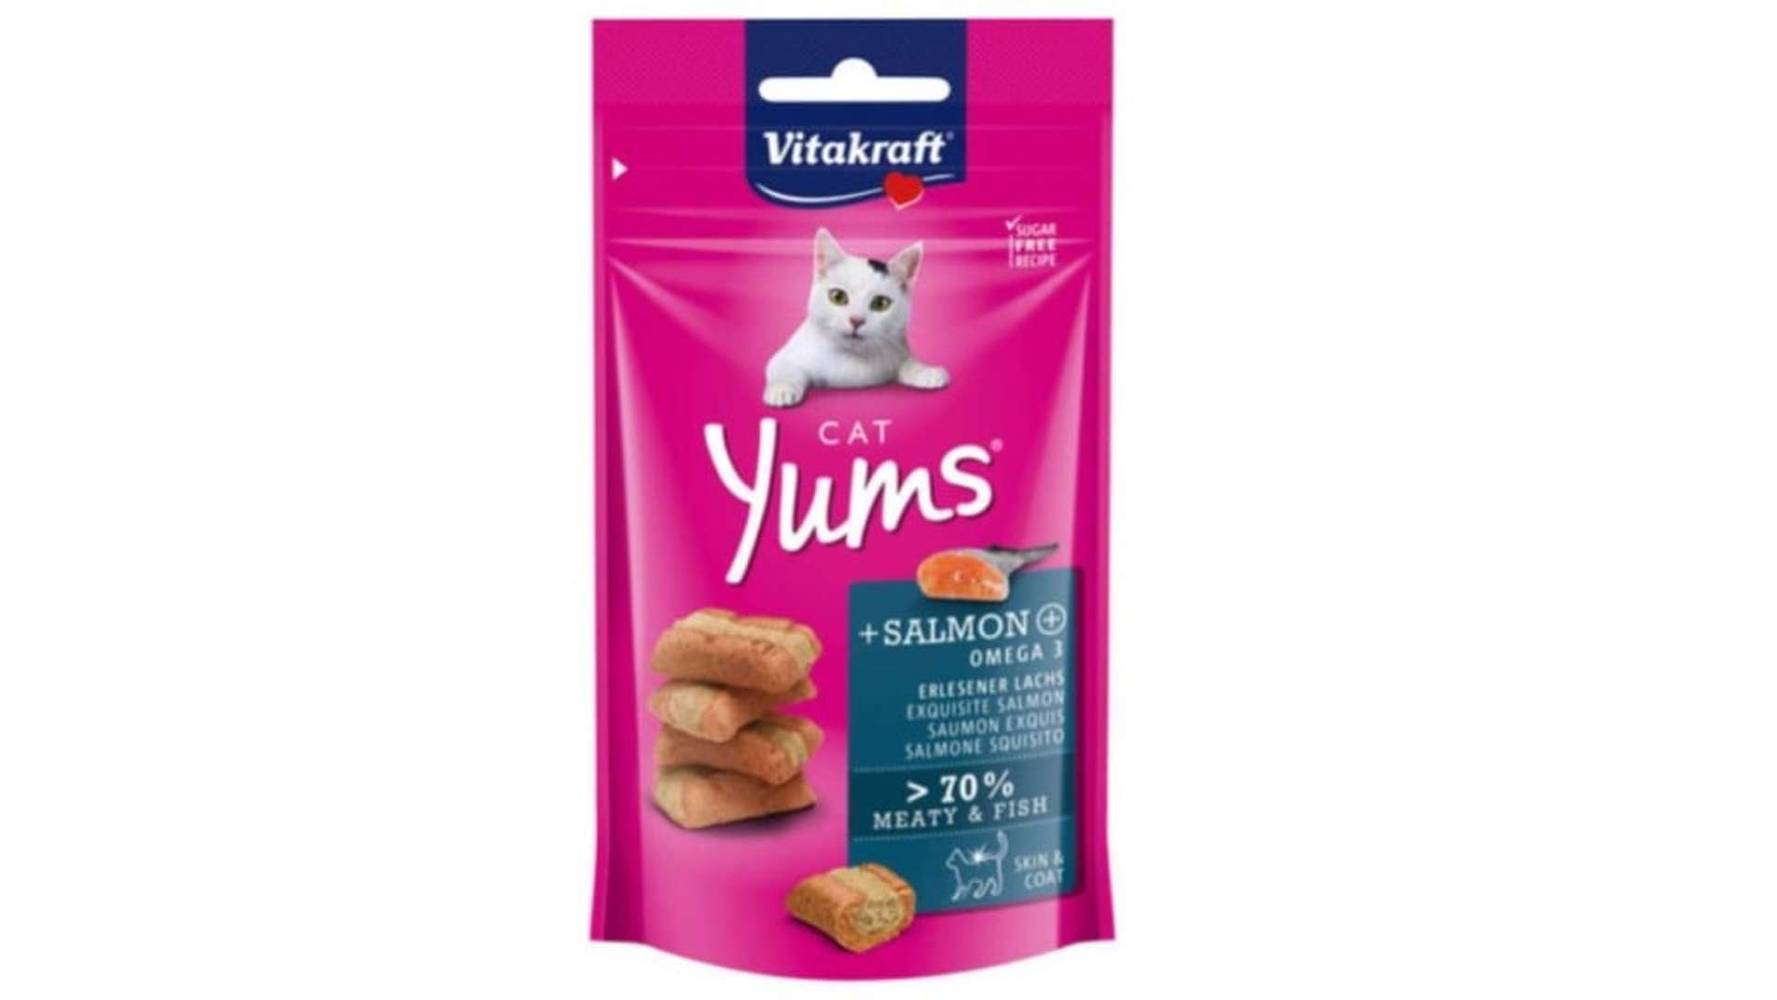 Vitakraft - Yums aliment complet pour chats au saumon exquis